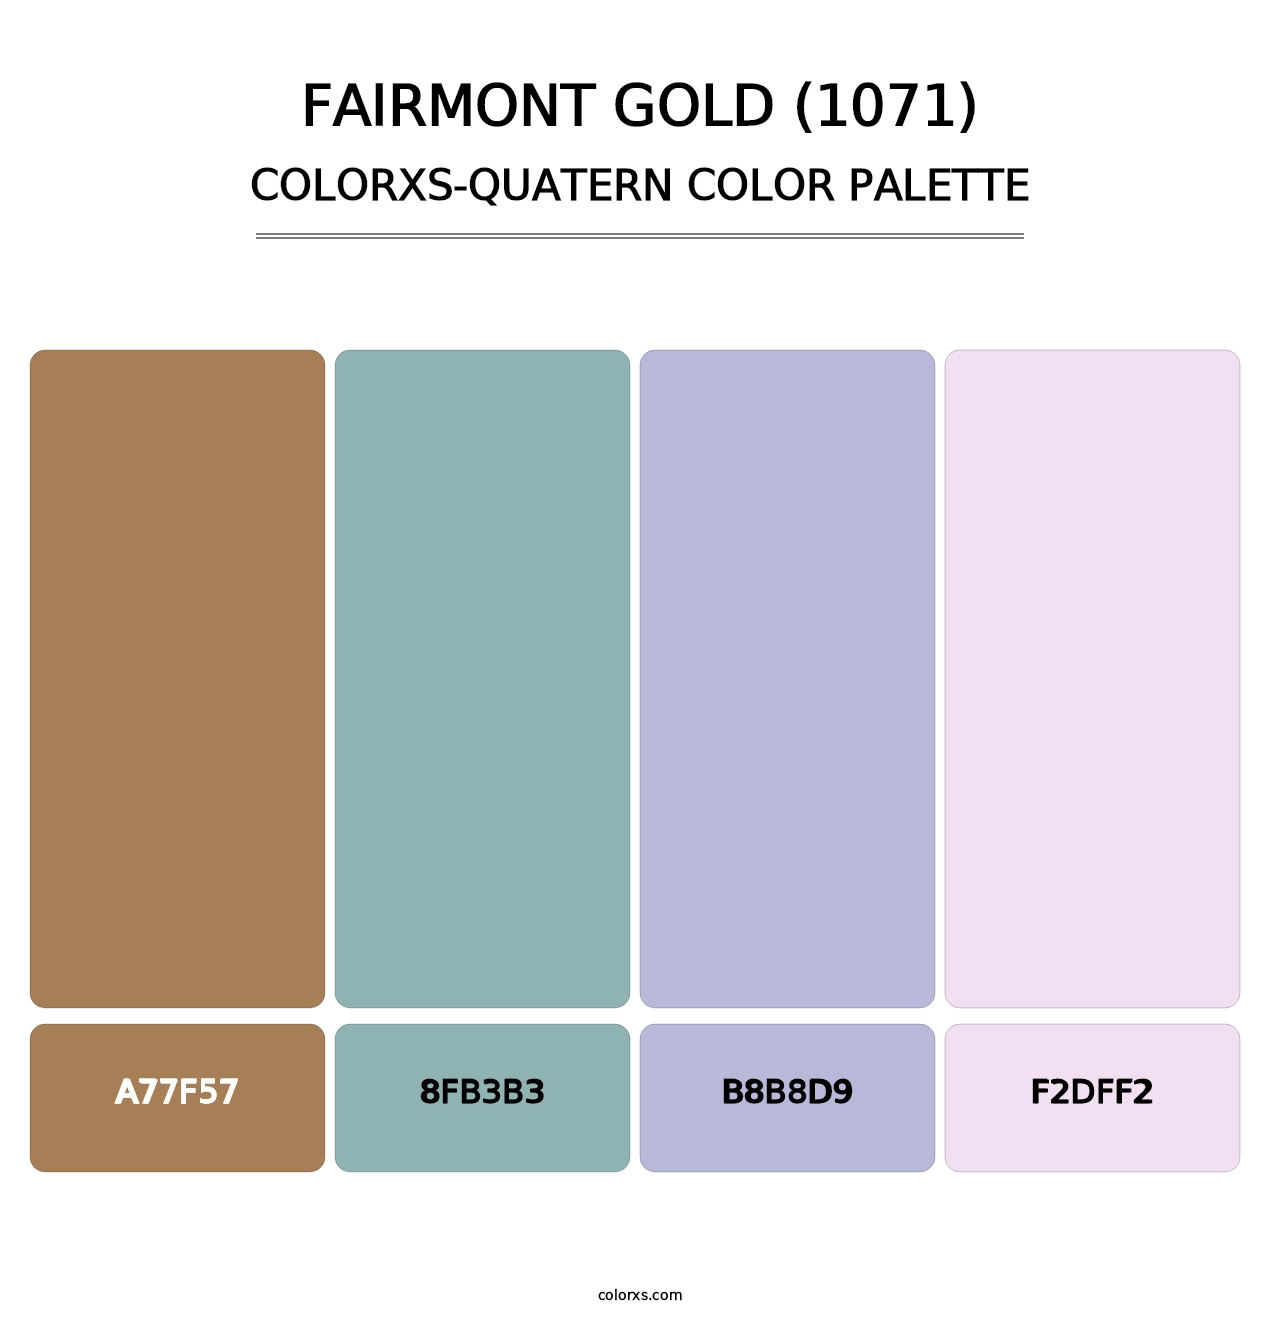 Fairmont Gold (1071) - Colorxs Quatern Palette